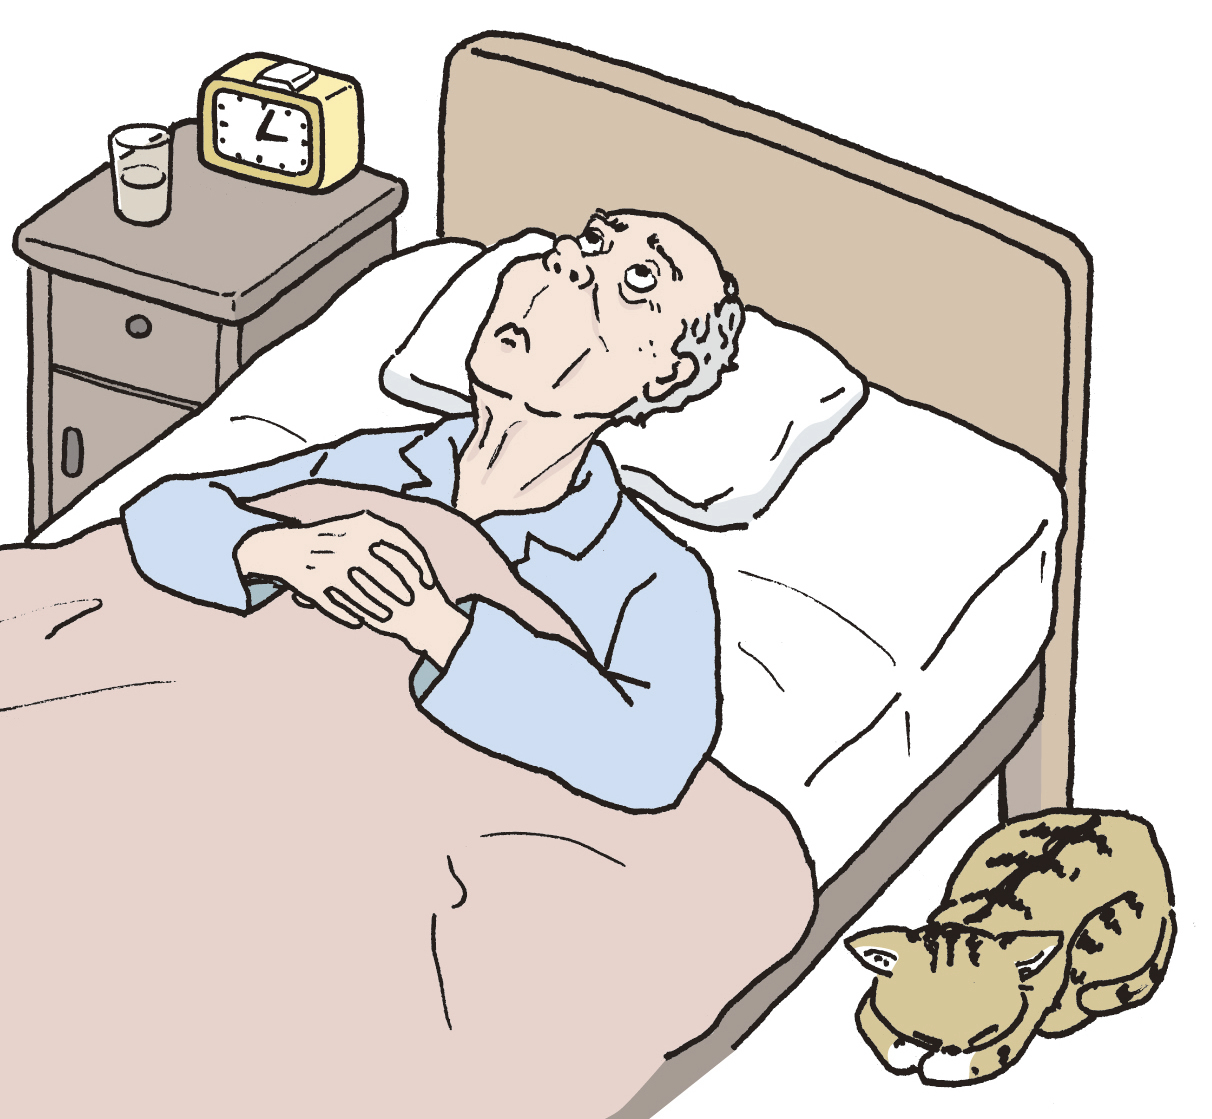 高齢になるほど不眠を訴える人は多くなるが、過剰な心配は禁物